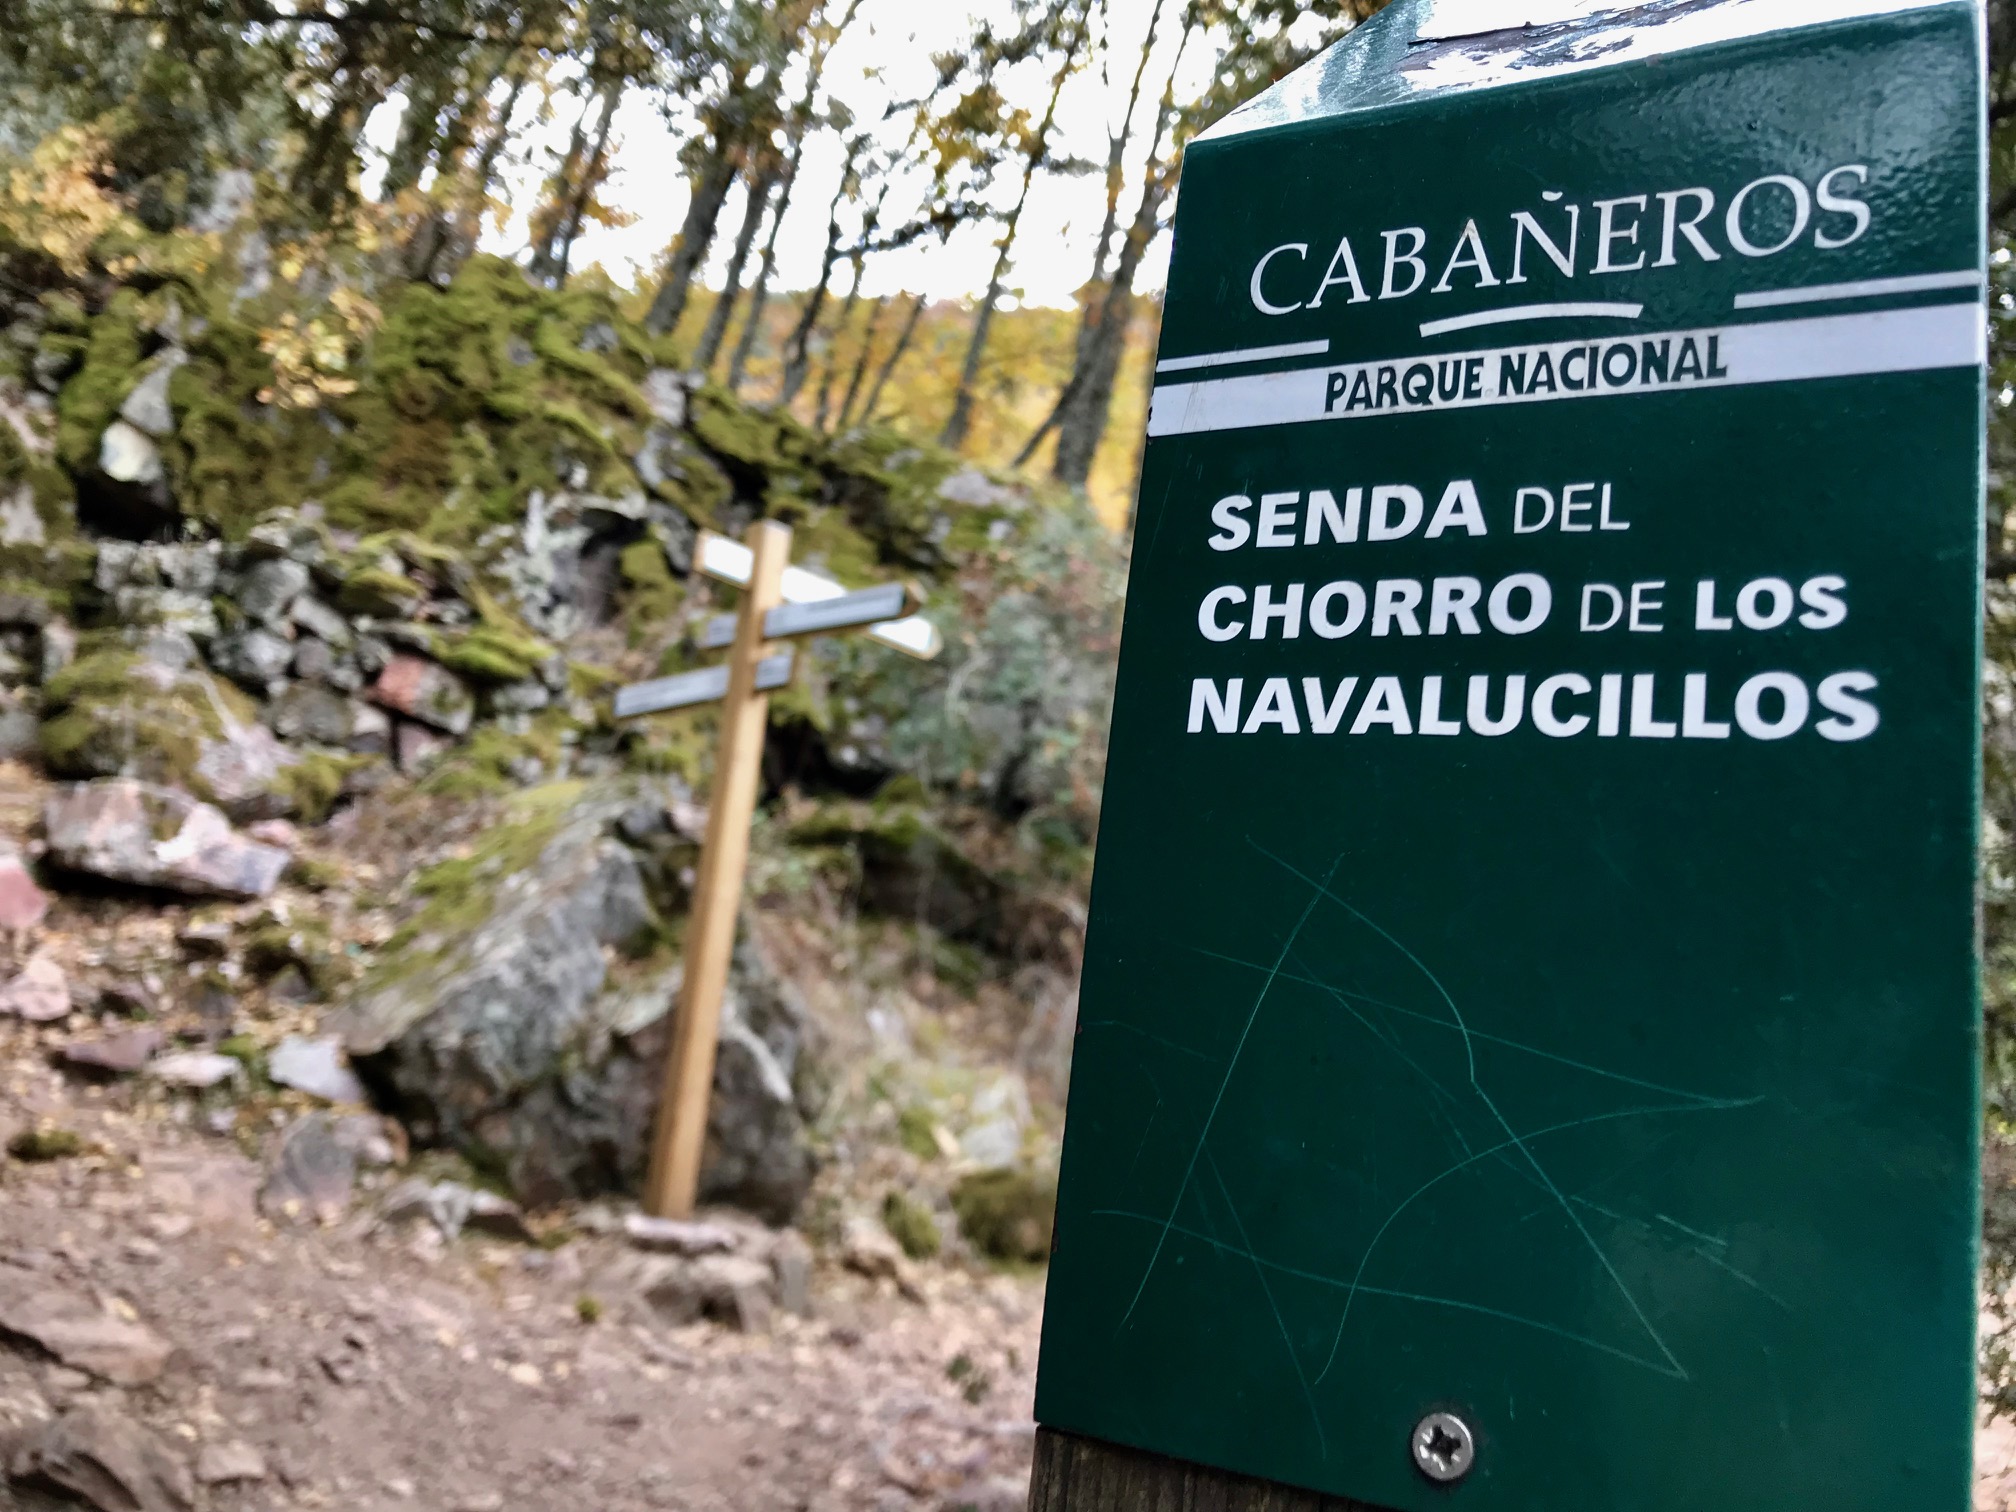 Ruta del chorro en el parque Nacional de Cabañeros